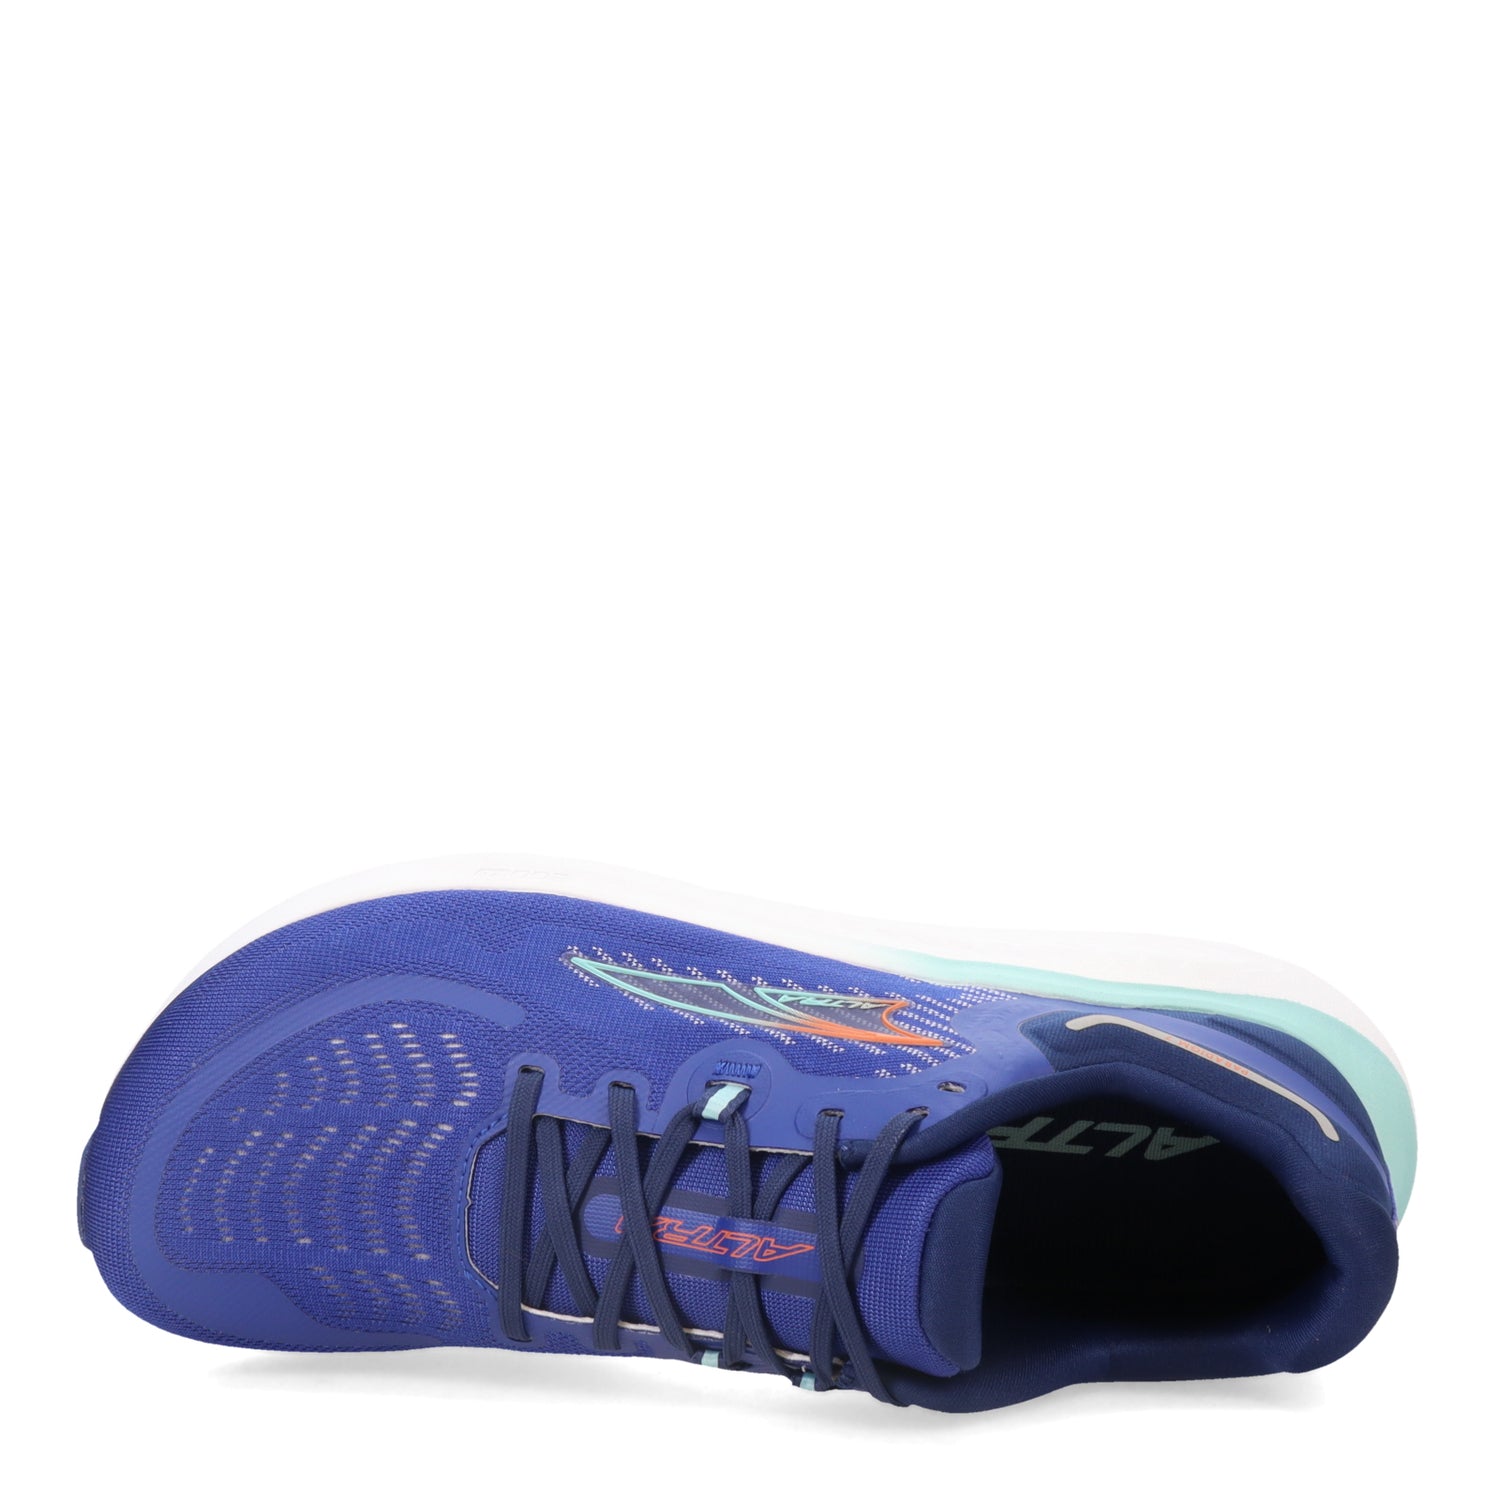 Peltz Shoes  Men's Altra Paradigm 7 Running Shoe - Wide Width BLUE AL0A82CE-440